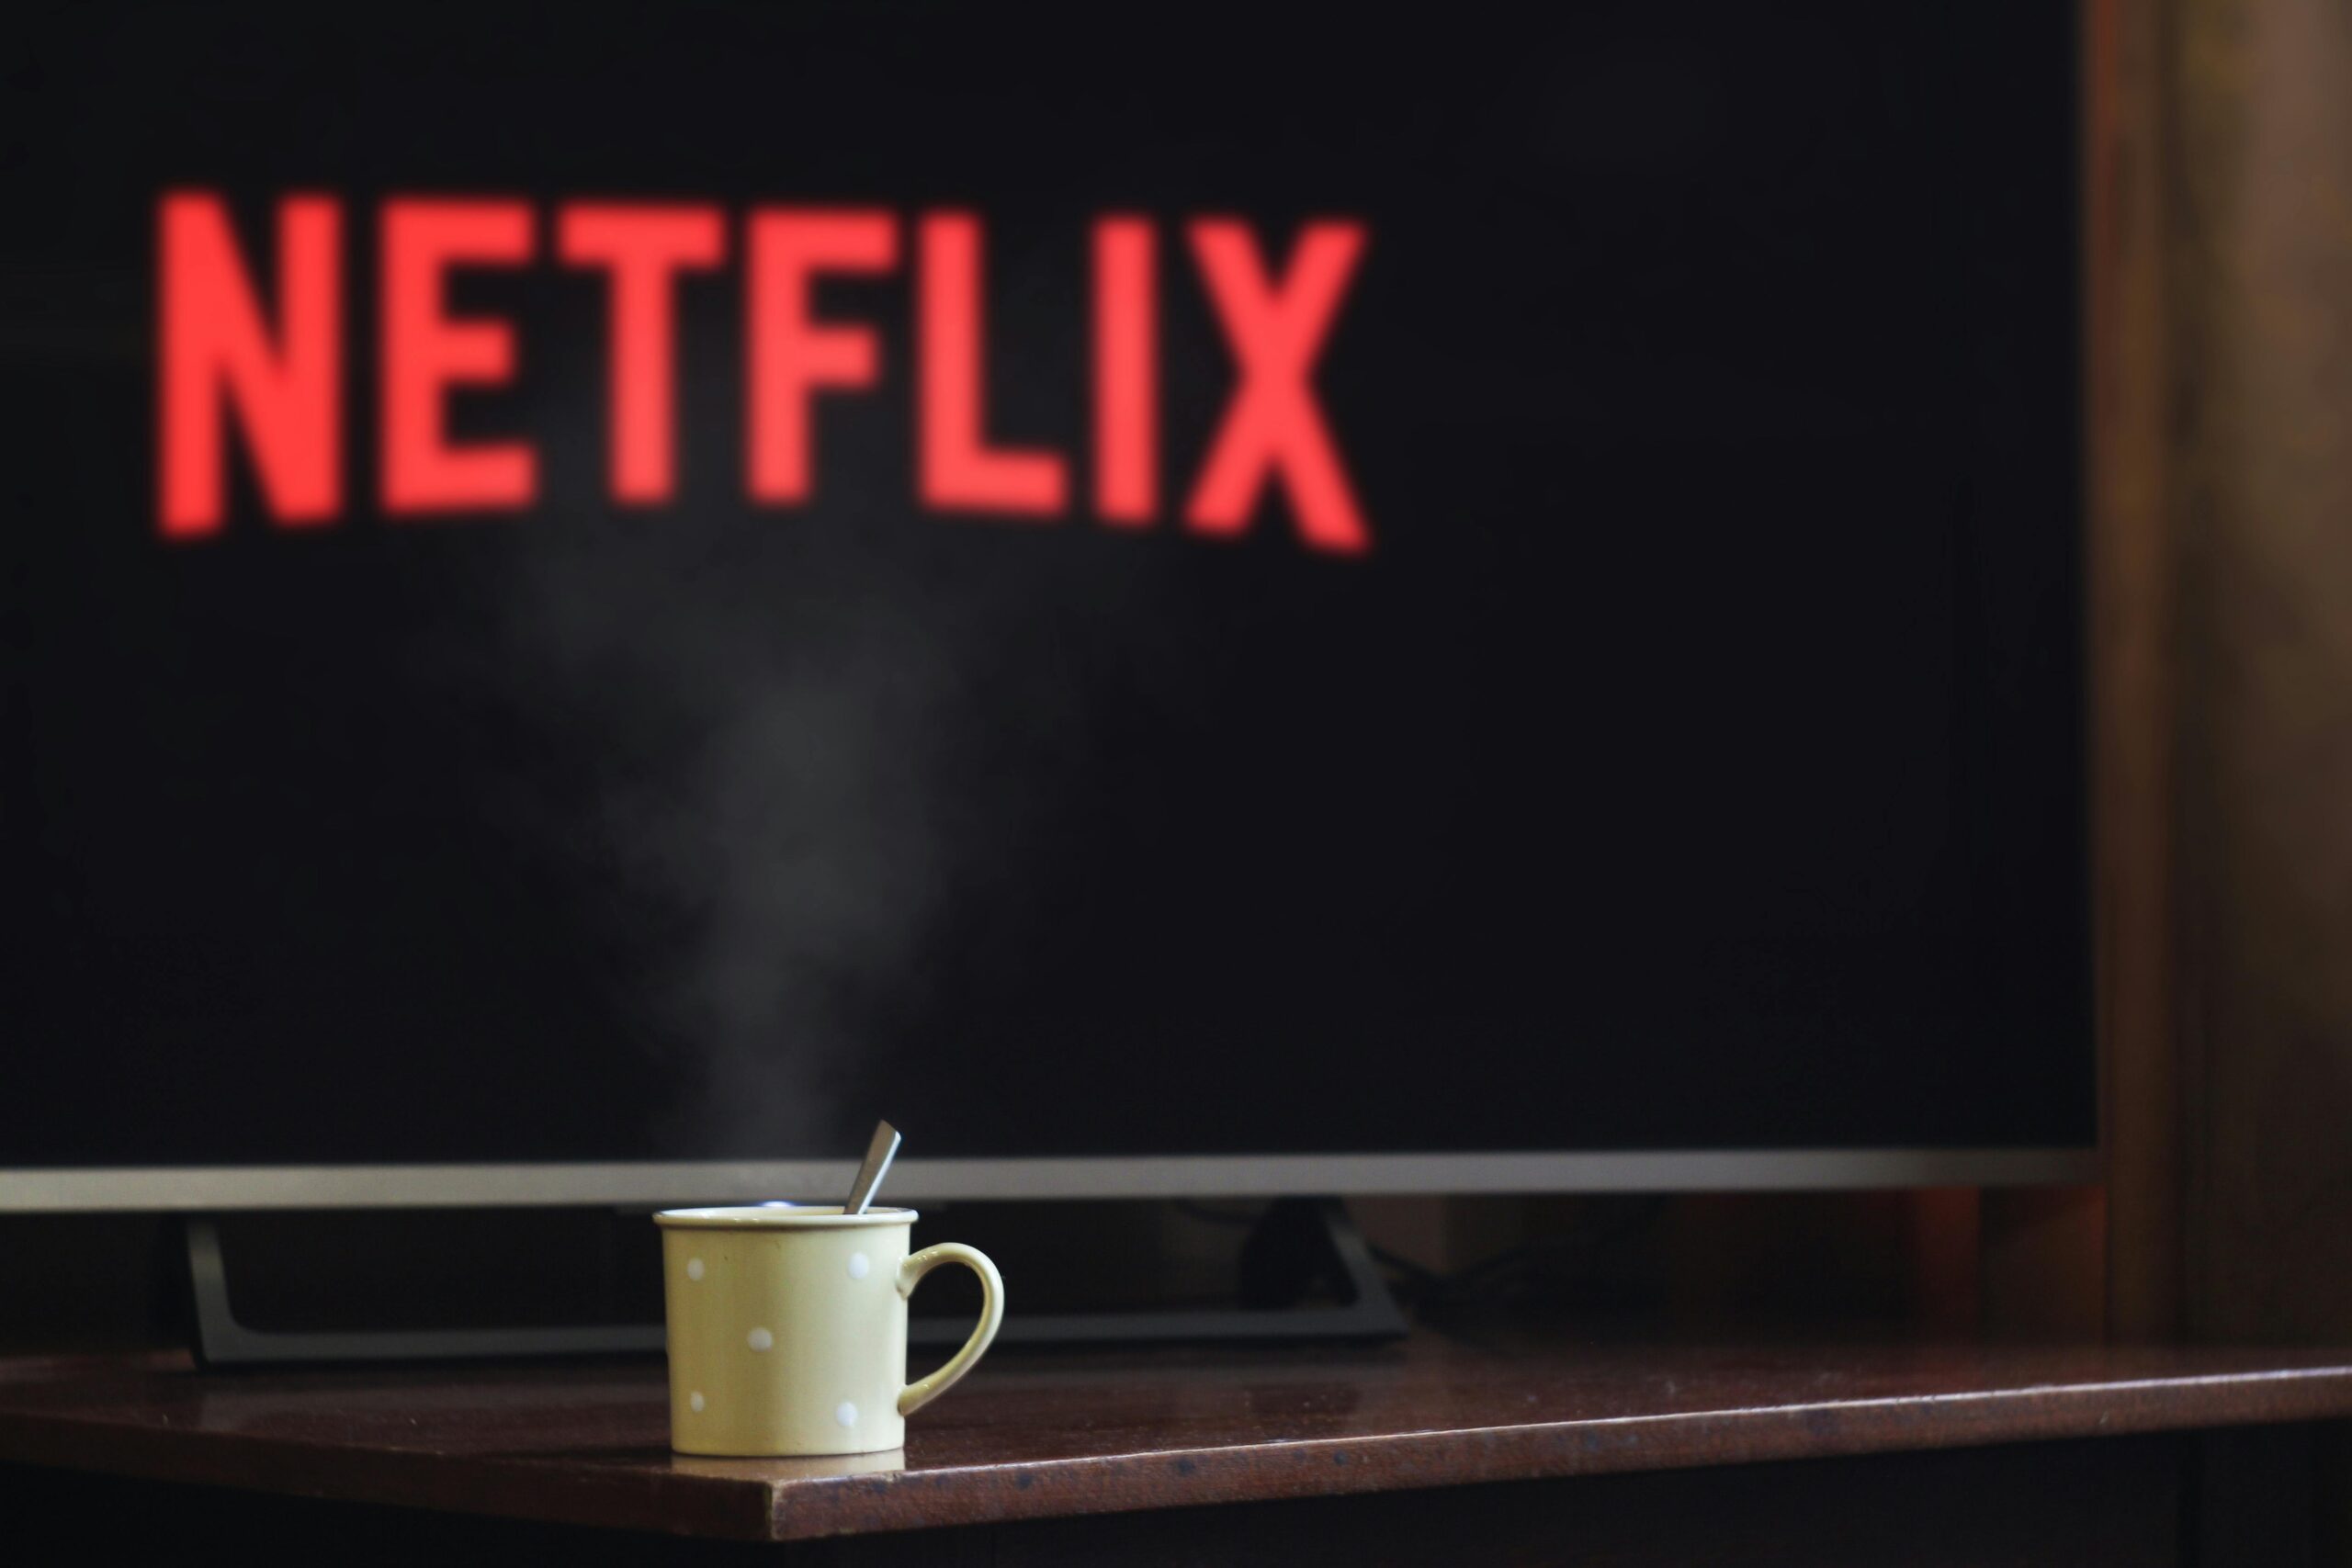 Warum stockt die Videowiedergabe bei Netflix trotz schneller Internetverbindung?